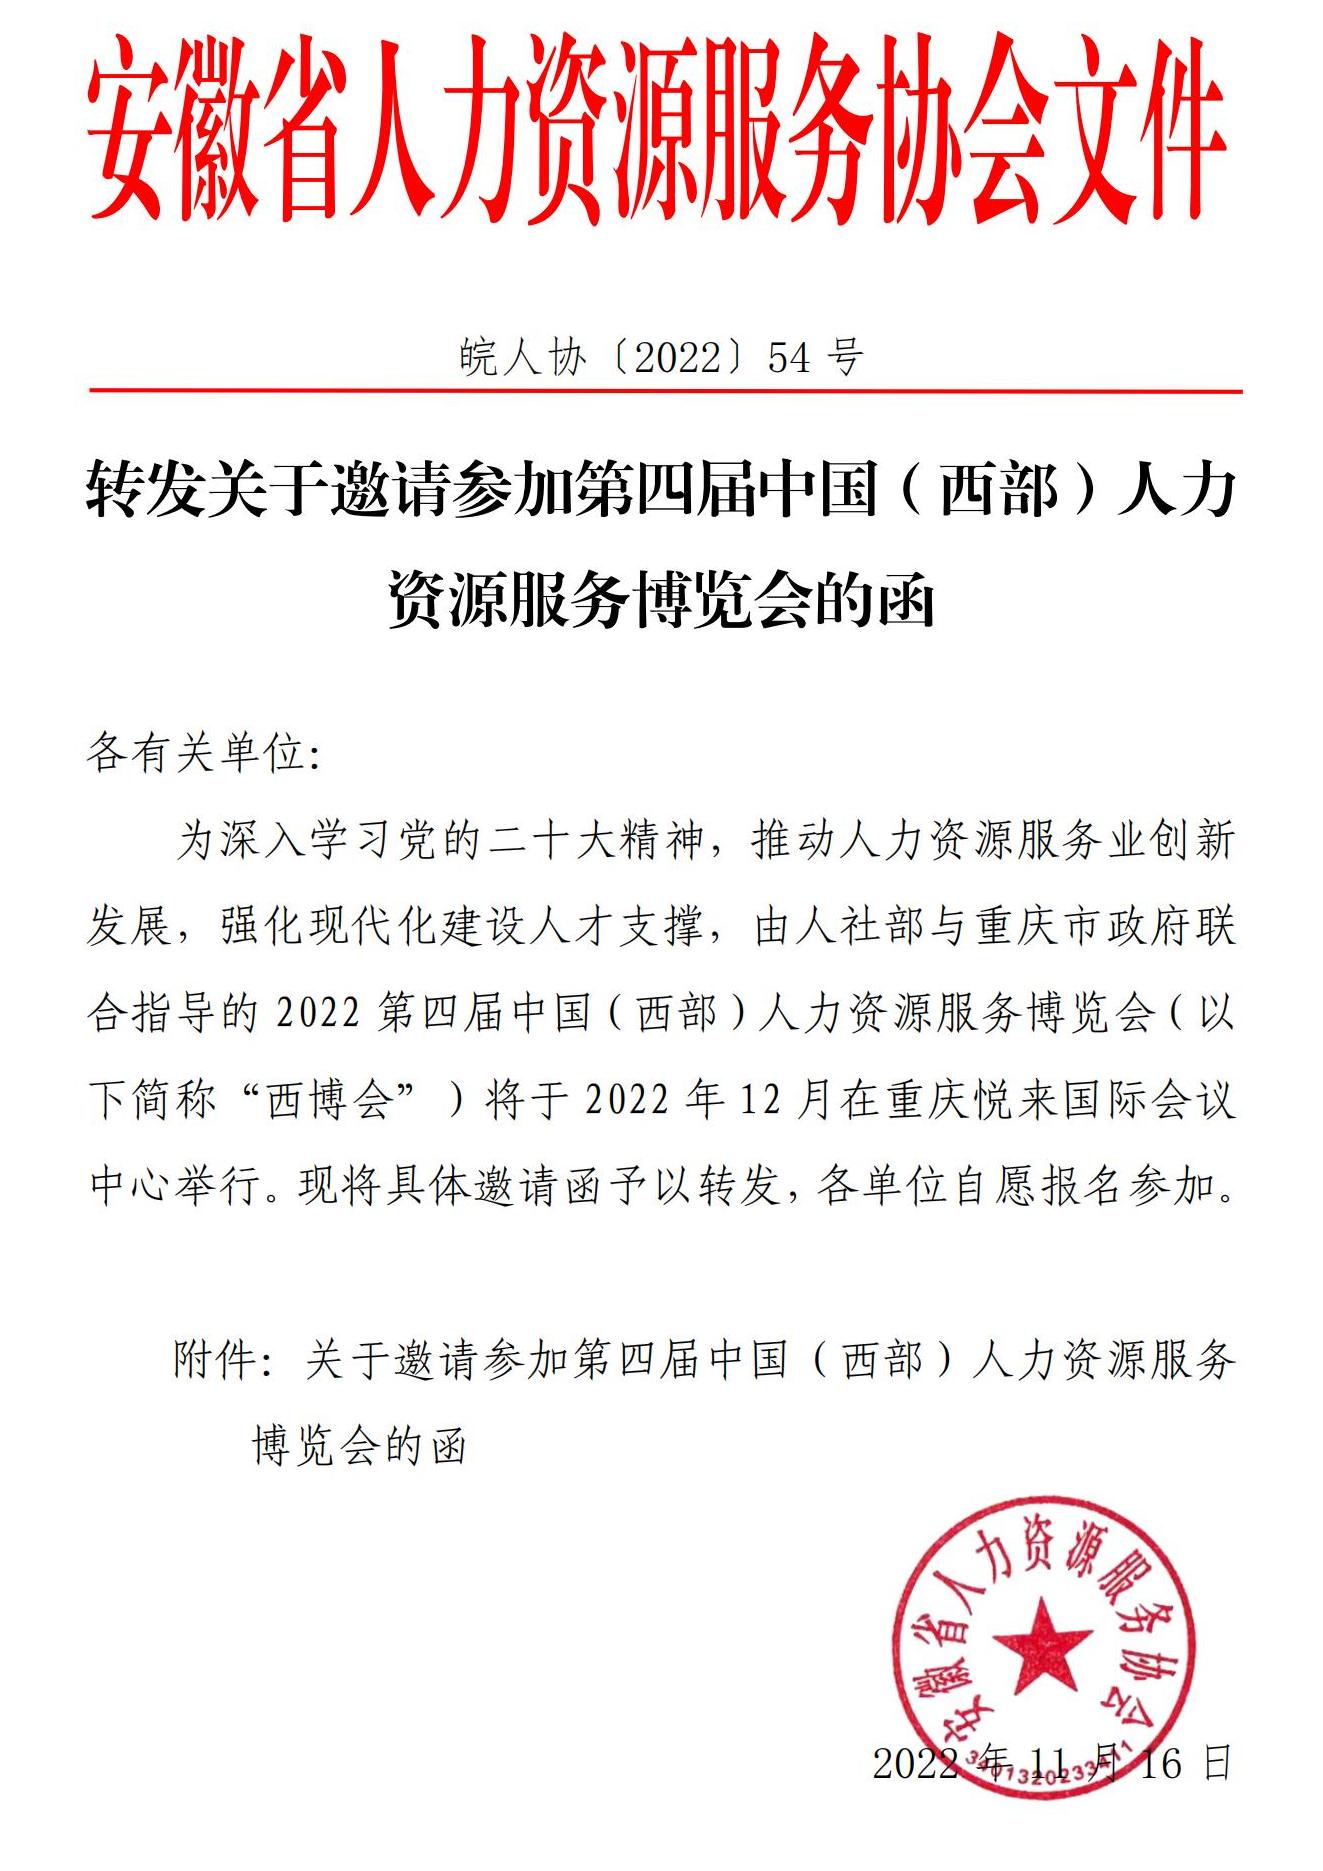 皖人协（2022）54号，转发关于邀请参加第四届中国（西部）人力资源服务博览会的函_00.jpg